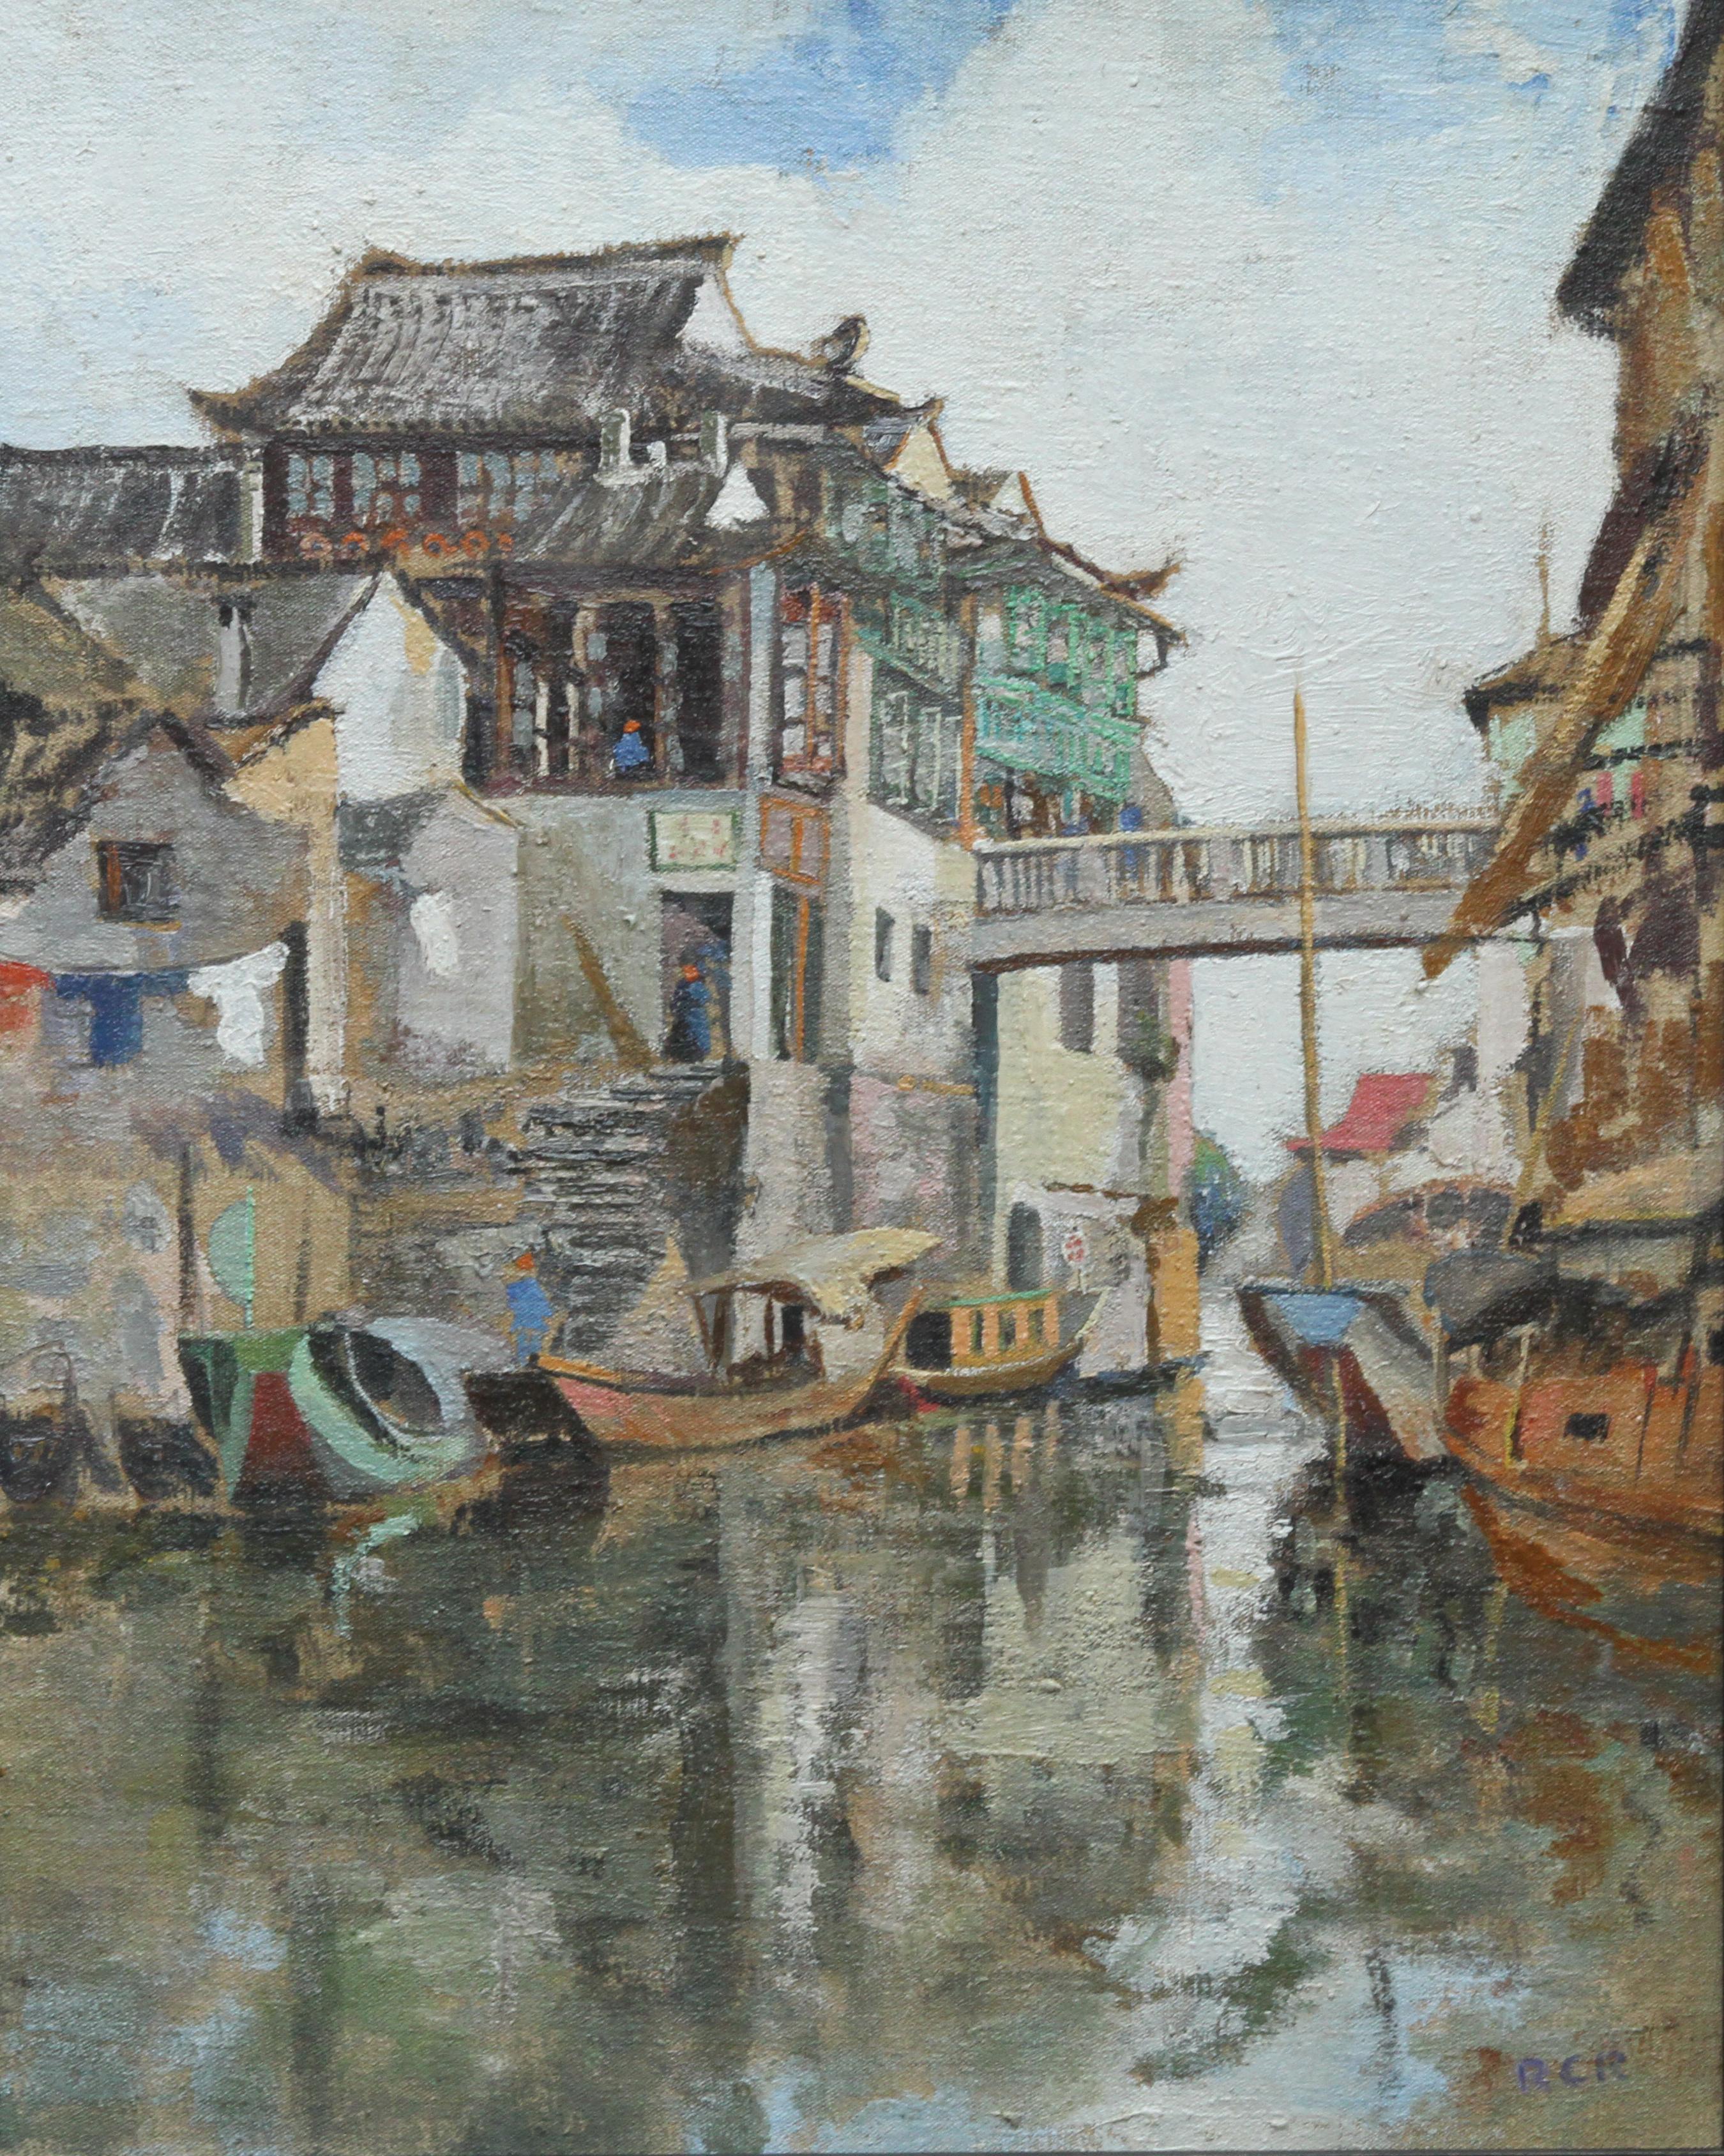 Soochow/Suzchou Chine - Peinture à l'huile impressionniste écossaise des années 20 - Chine du canal - Painting de Robert Cecil Robertson